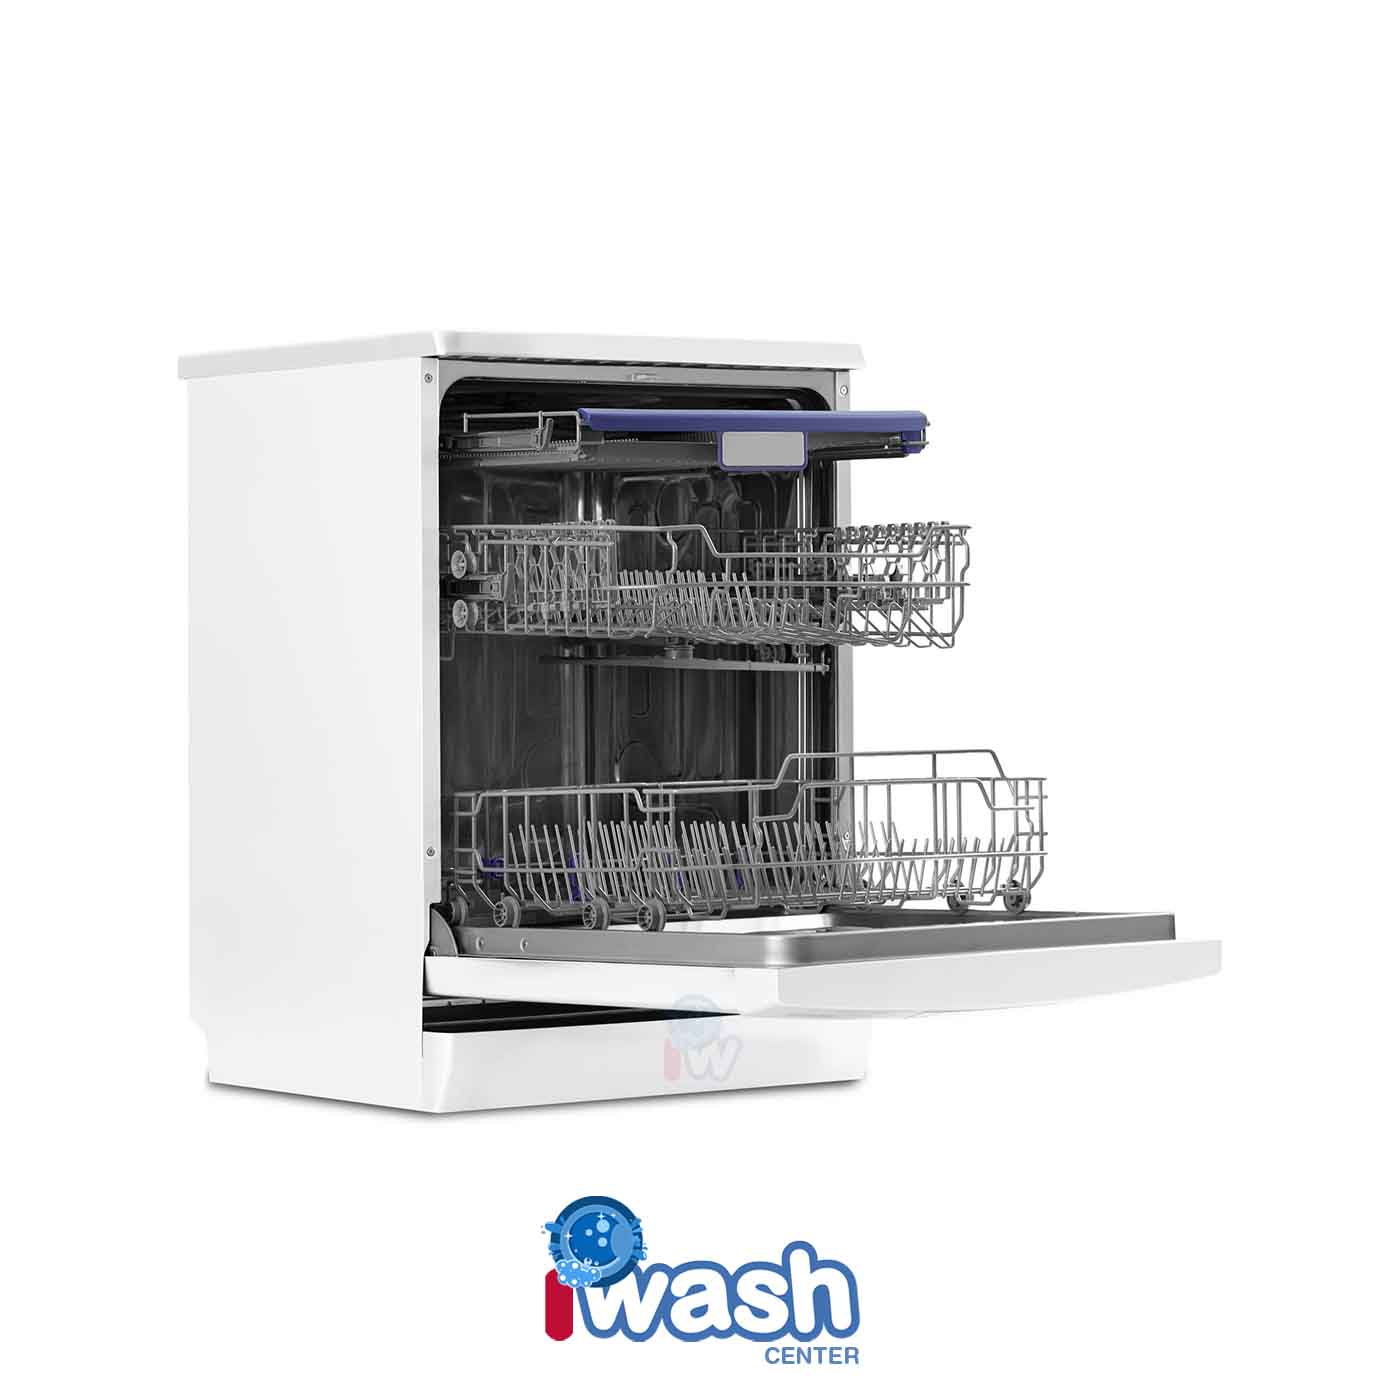 ماشین ظرفشویی 15 نفره تکنوهاوس مدل DW15-Max-D915W سفید